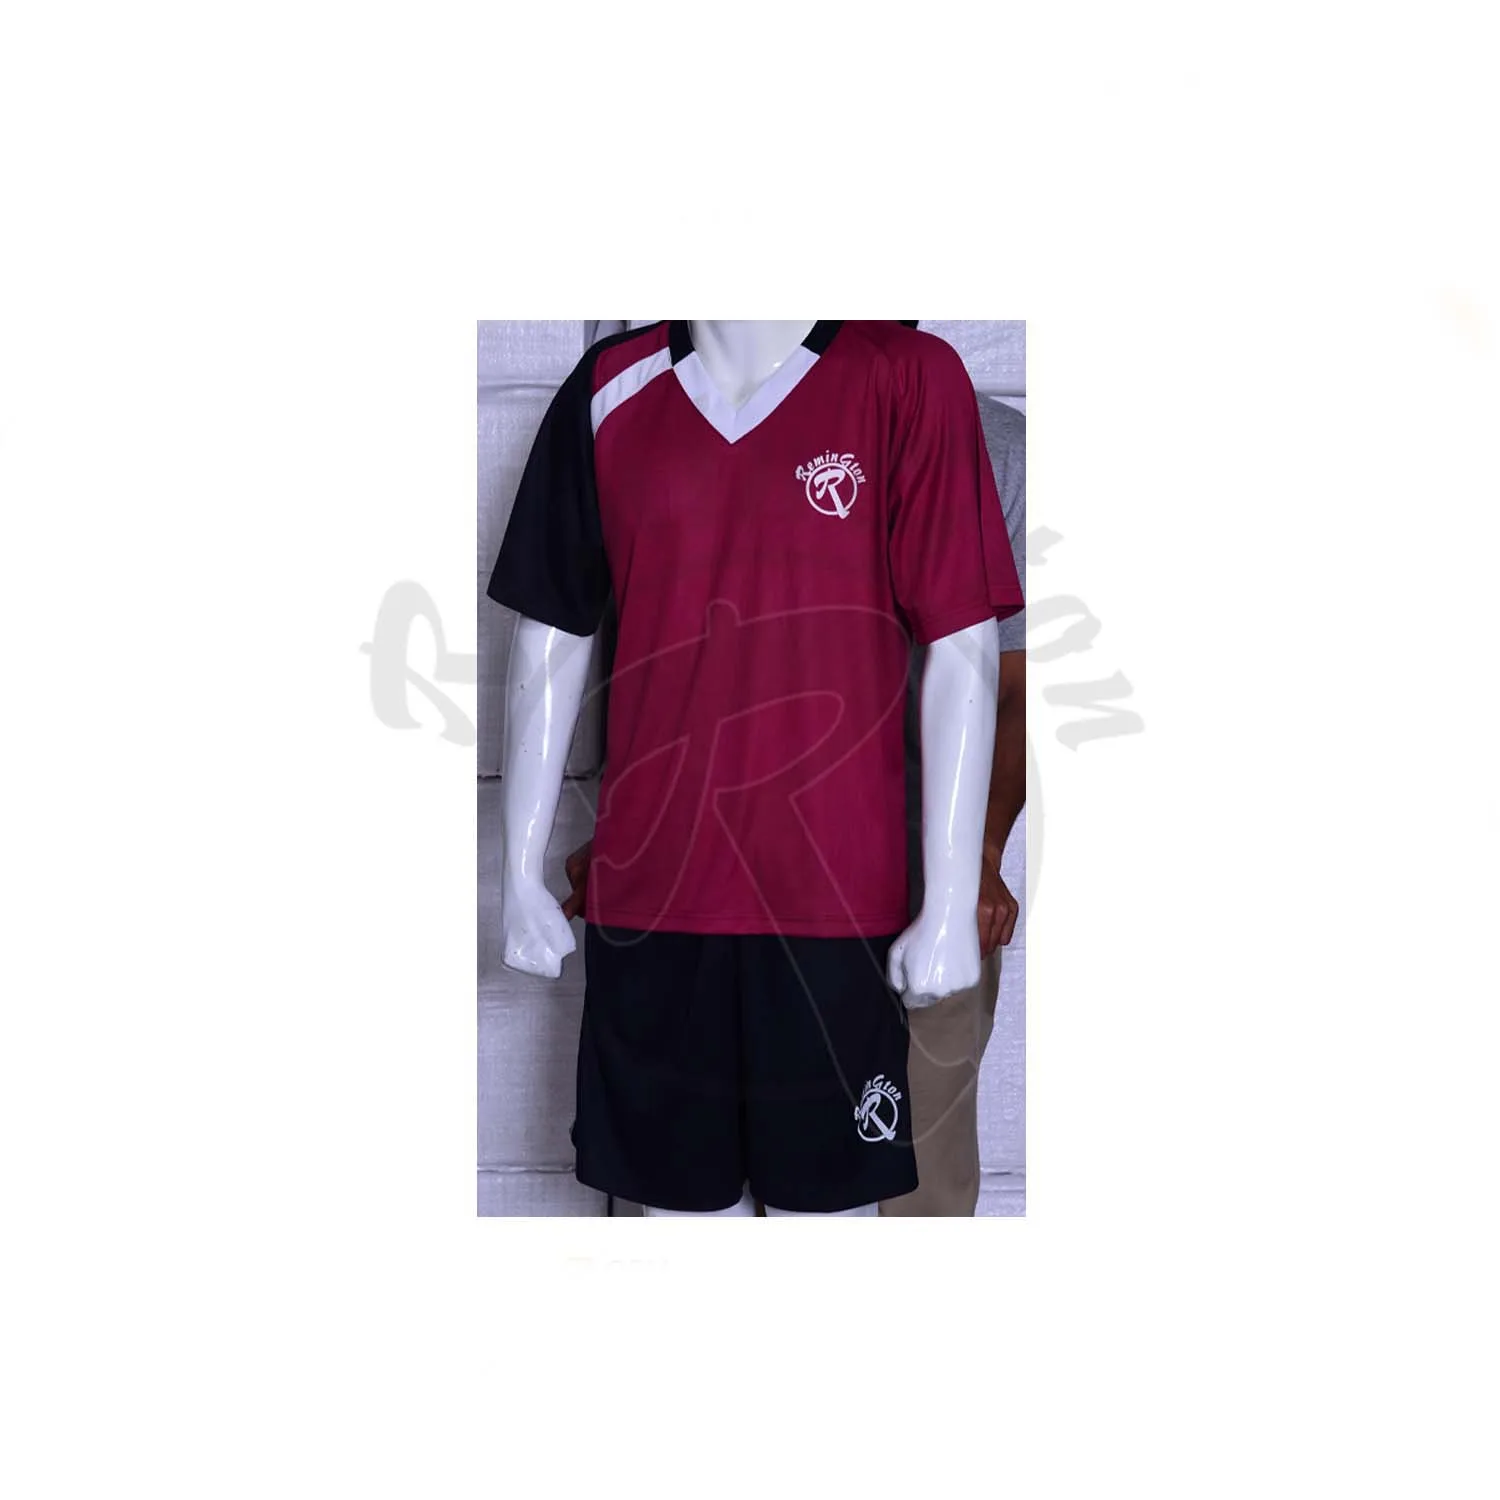 Rsu 02パーフェクトサッカー選手ユニフォーム最新コレクションカラーマルーンシャツとブラックパンツ Buy 栗色シャツとショートパンツセット Rsu 02トレーニングチーム選手のユニフォーム 完璧なサッカー選手のユニフォーム Product On Alibaba Com